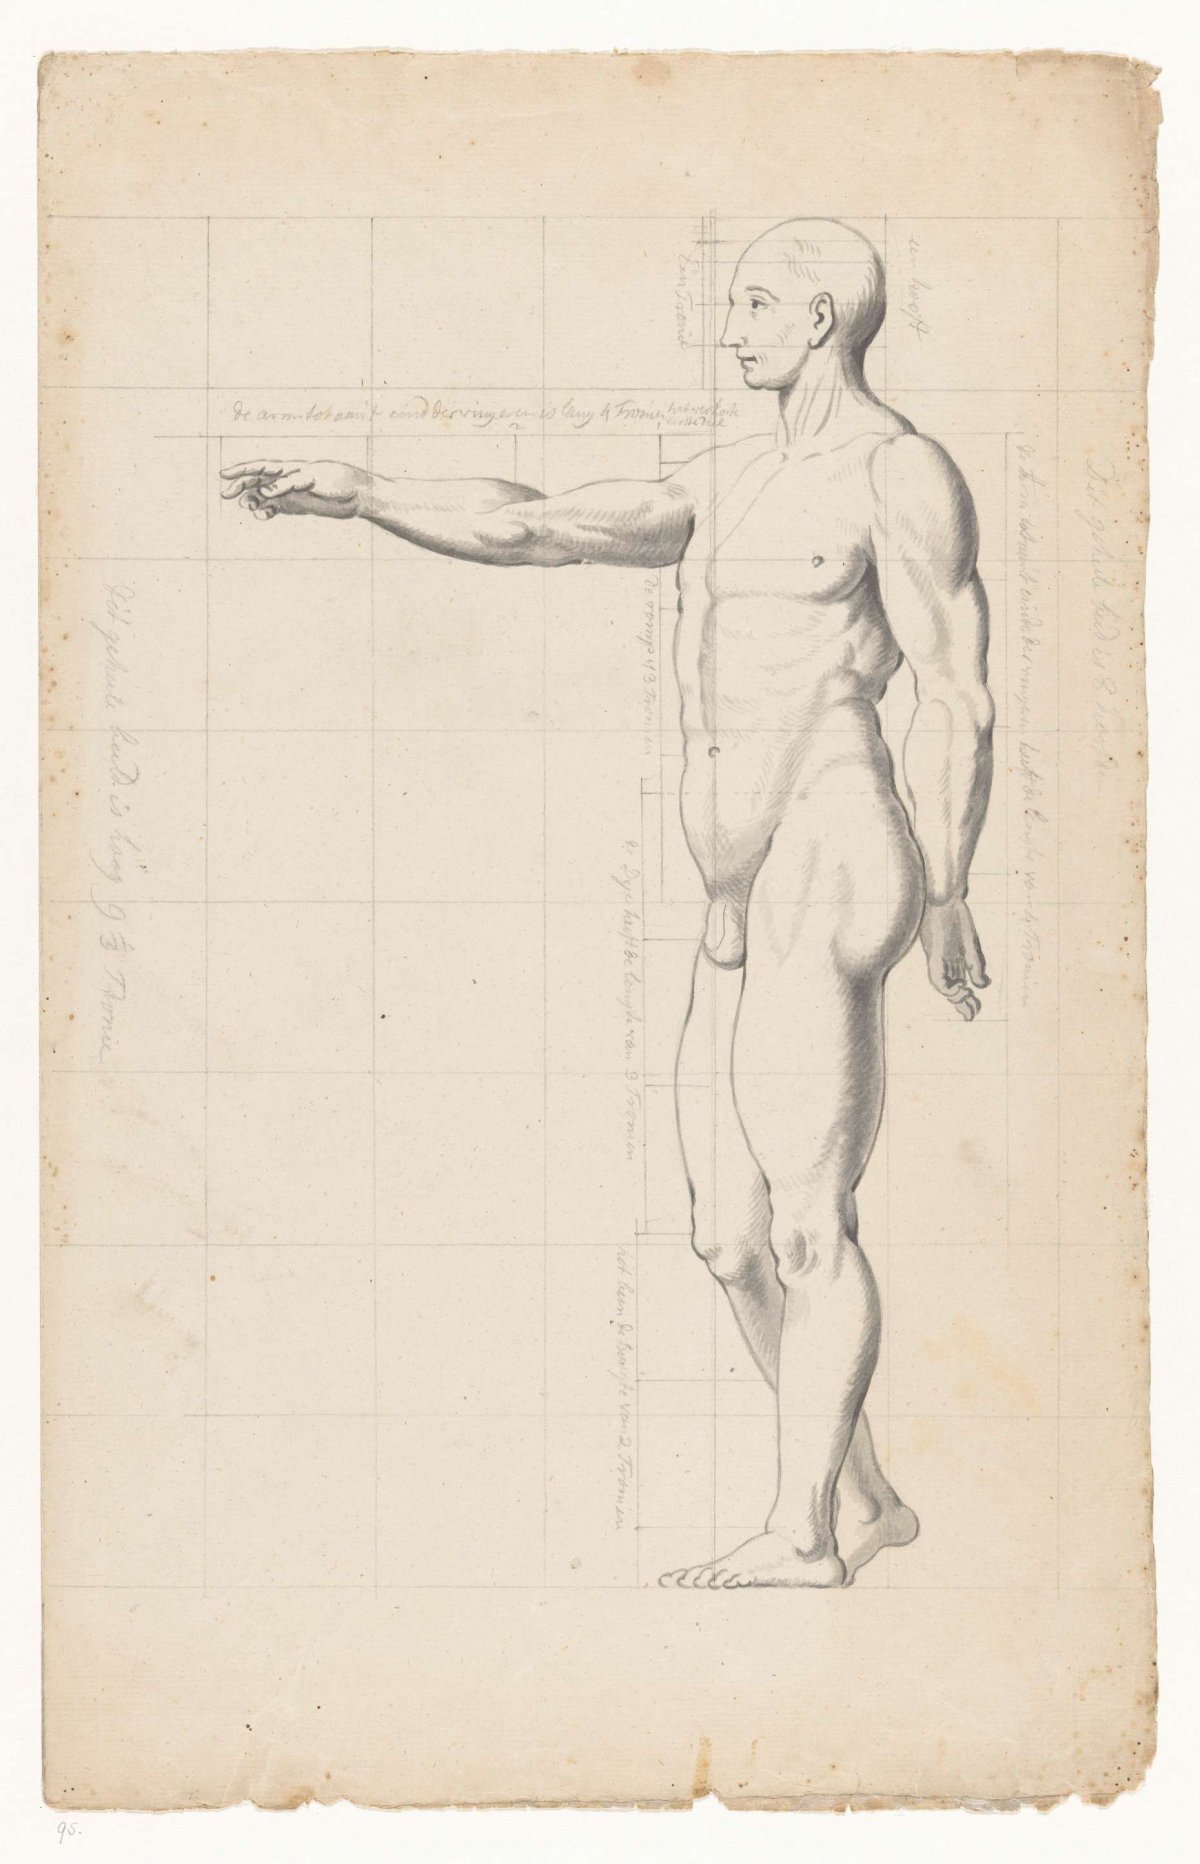 Nude studies of man and woman, Jan Brandes, 1787 - 1808